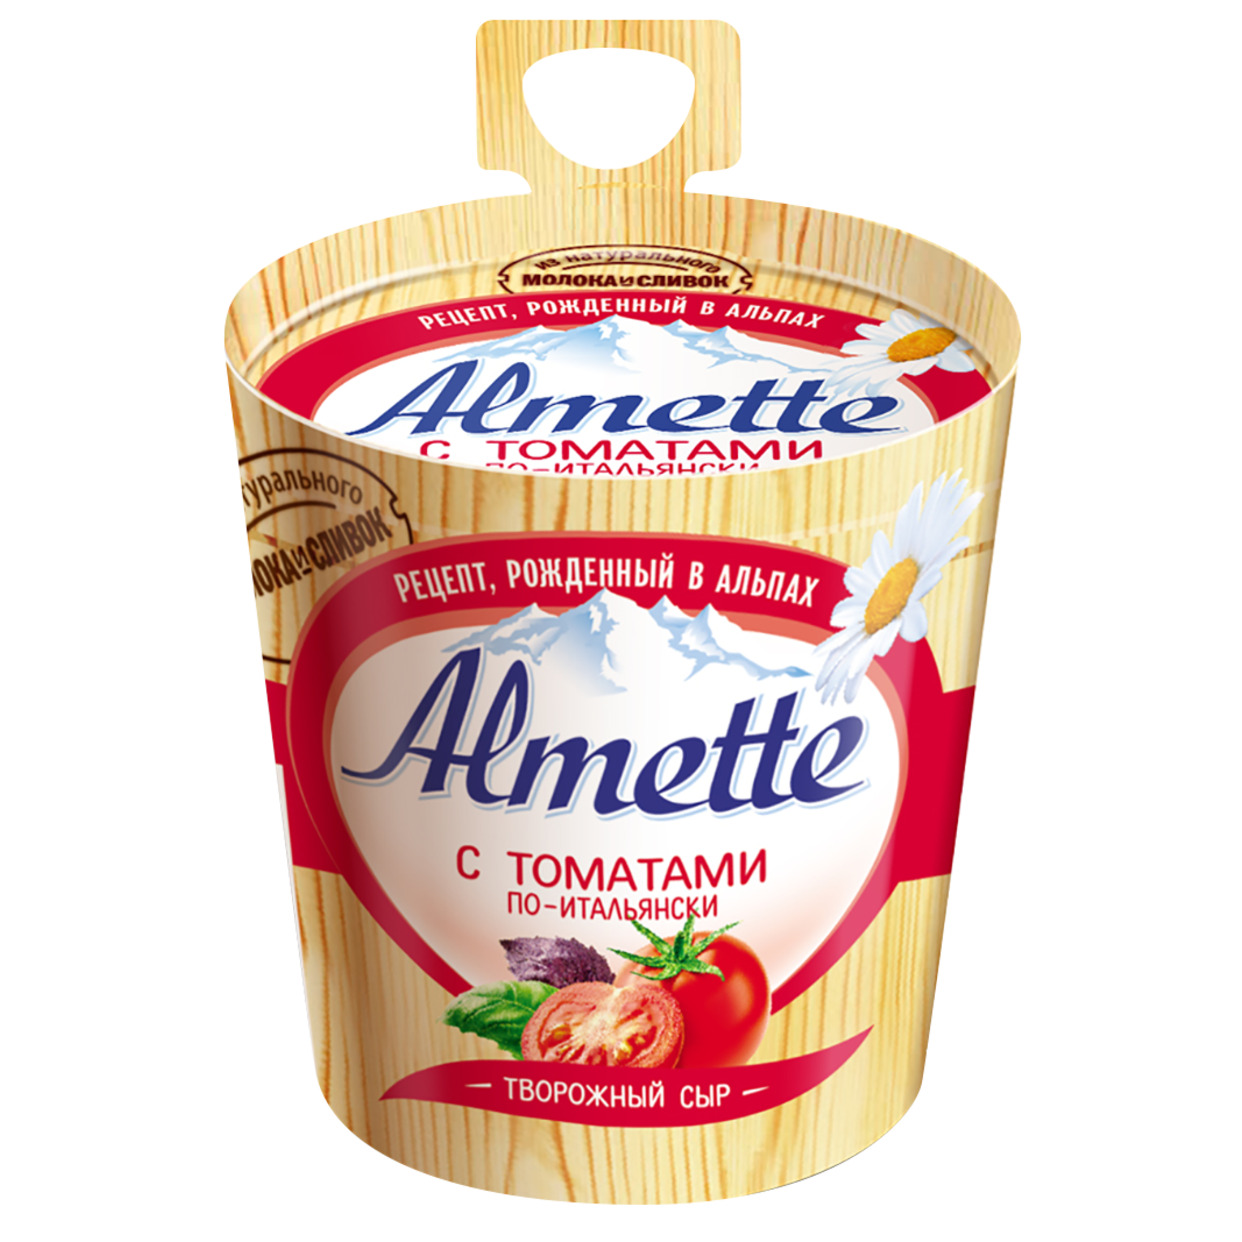 Сыр Almette, с томатами и итальянскими травами, 150 г